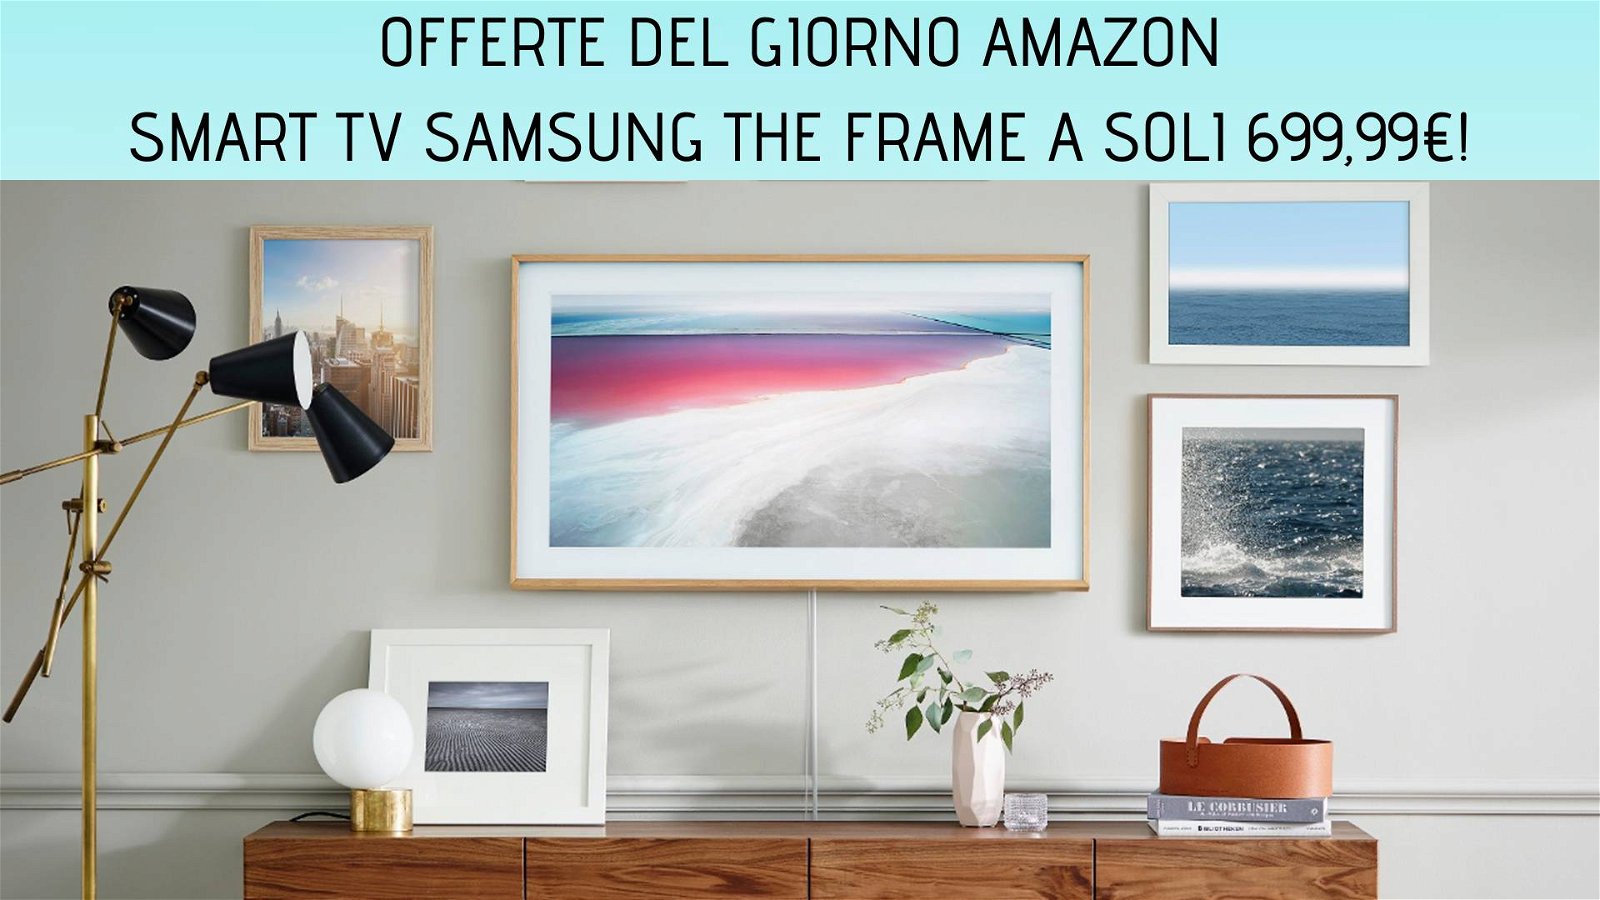 Immagine di Offerte del giorno Amazon: smart TV 4K Samsung The Frame scontata del 46%!